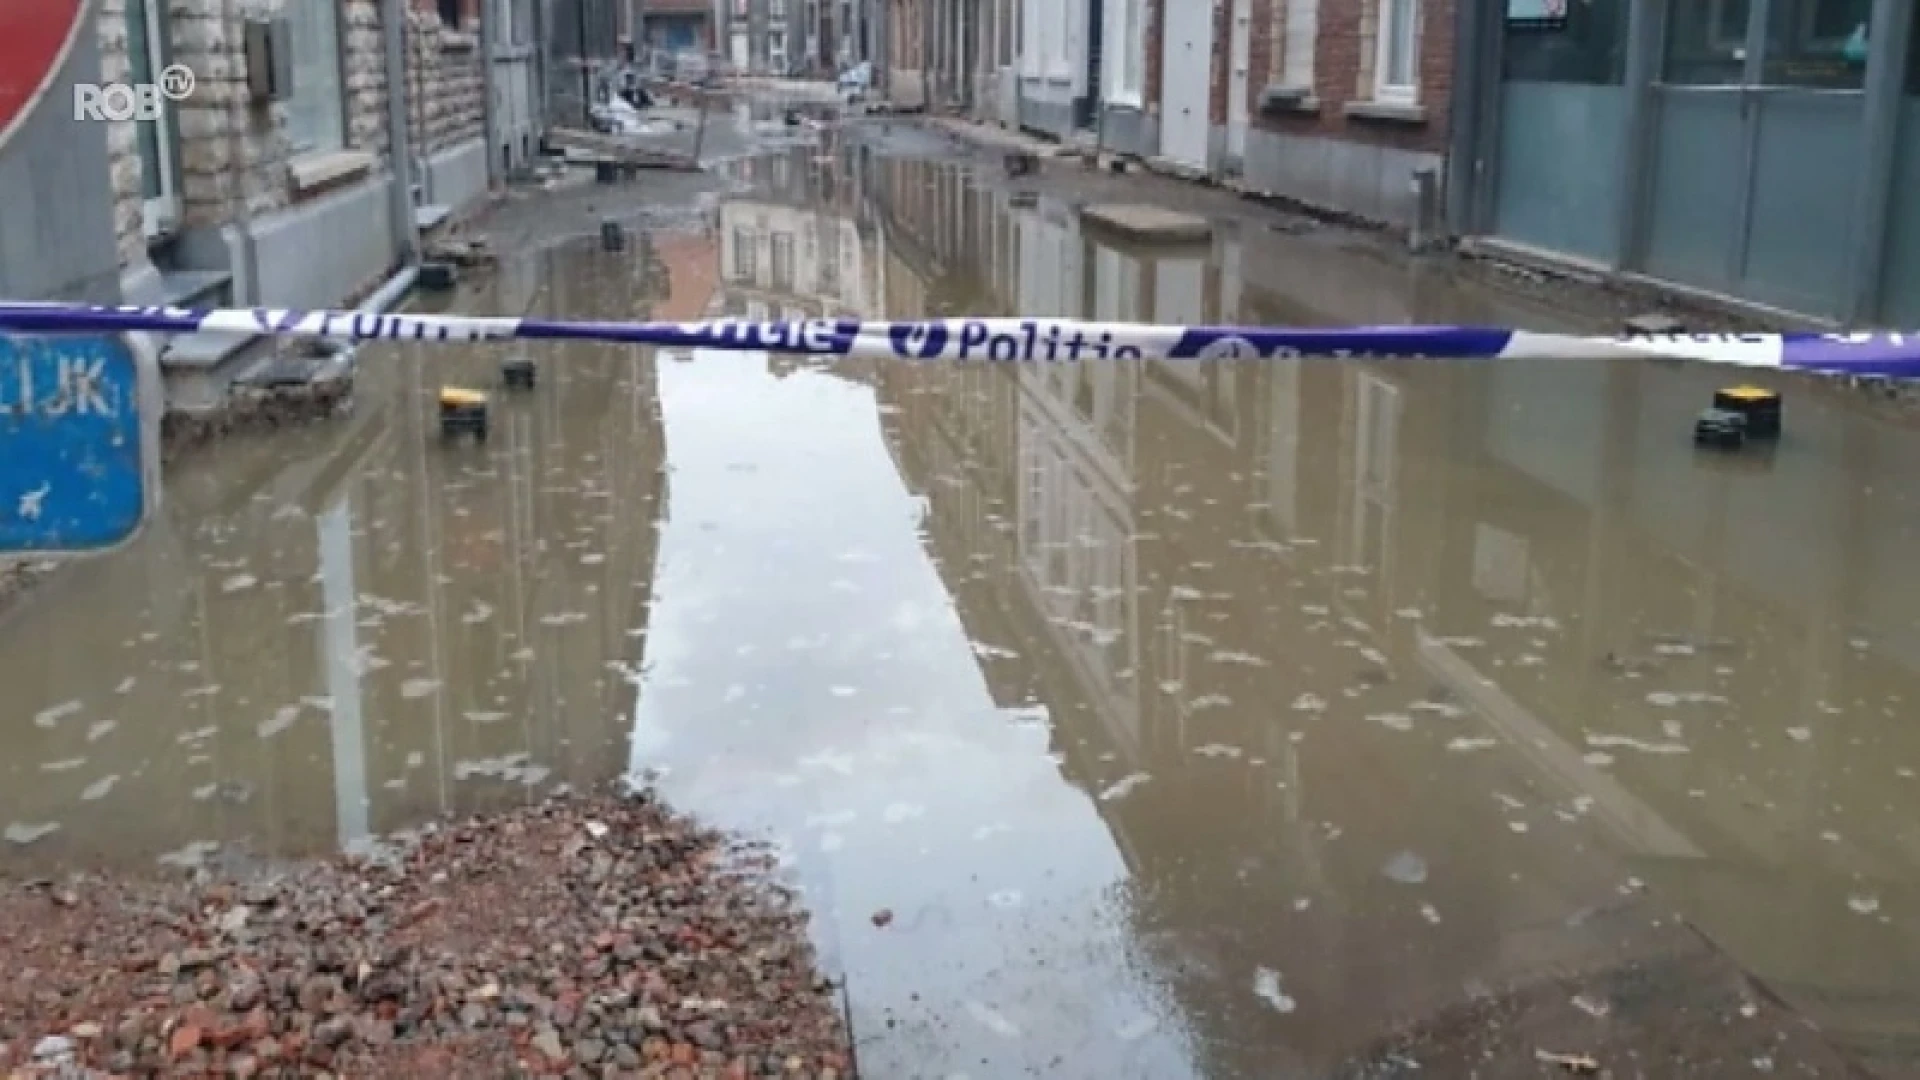 Schrijnmakersstraat in Leuven verandert in kleine rivier door waterlek